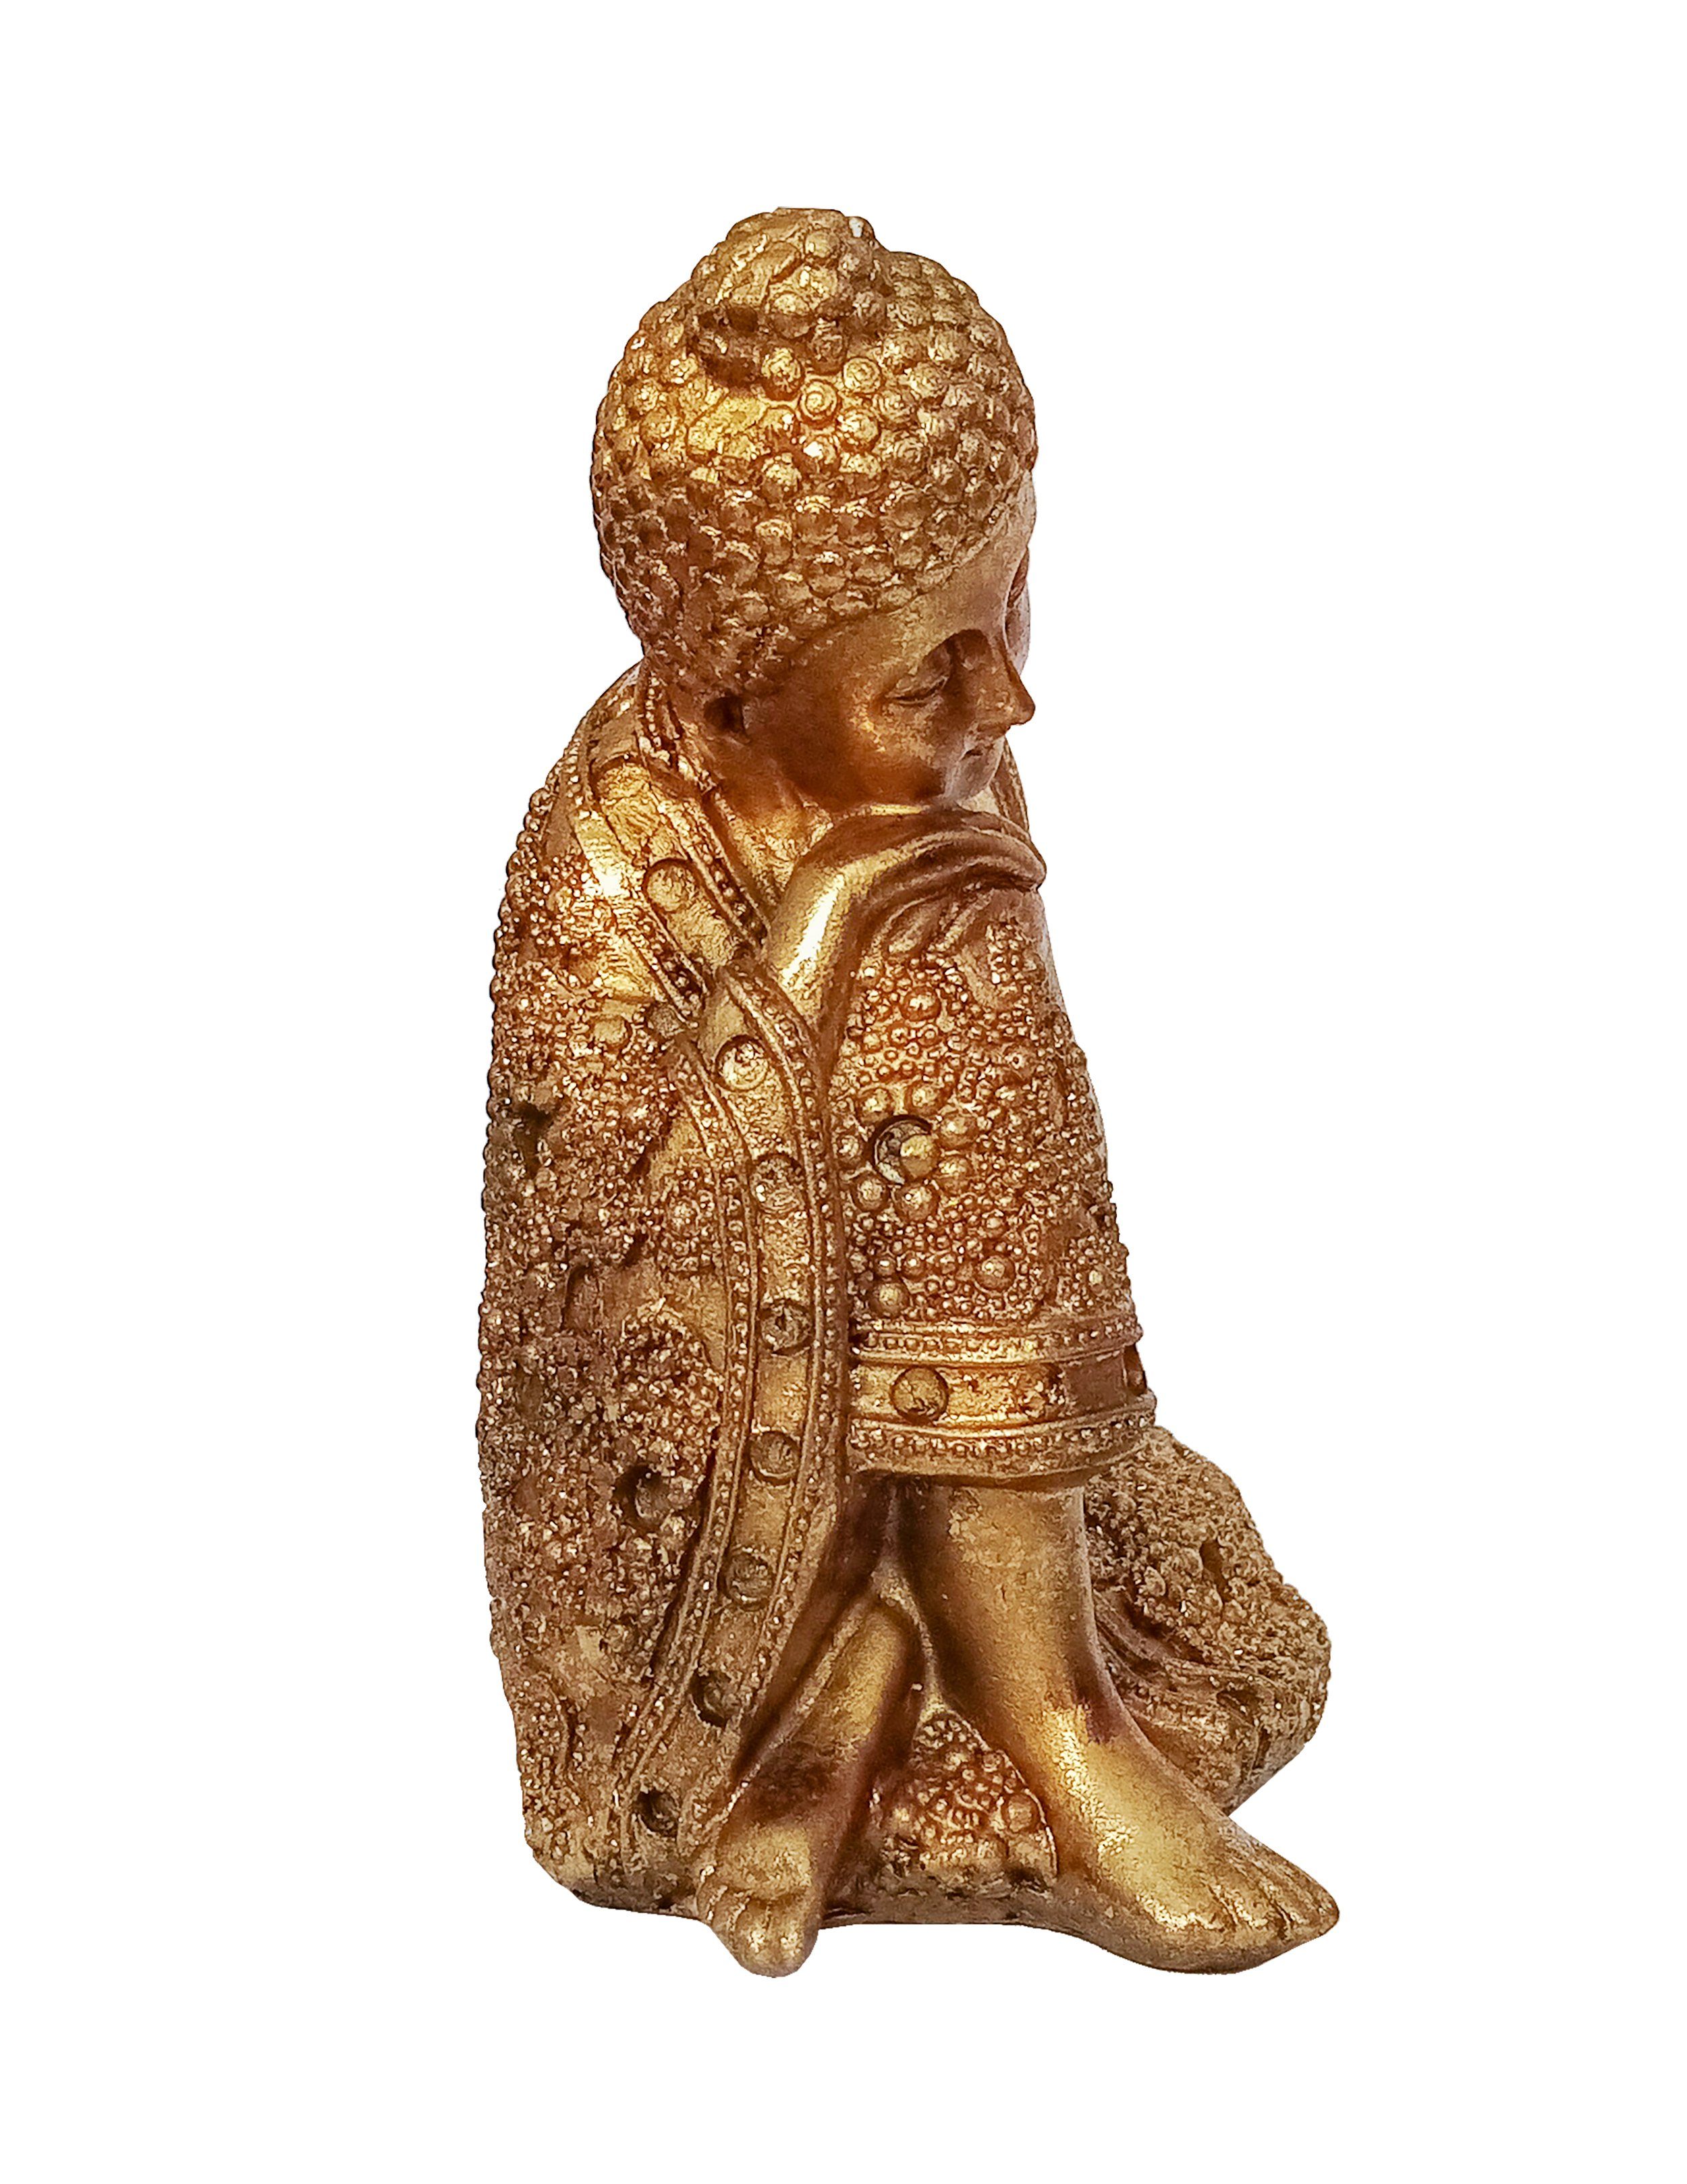 Giftdecor Buddhafigur Buddha Figur Auf Deko Polyresin Shui Statue Knie Feng rechtes aus Decoration 12x16cm Garten 91 (auf Knie), Gold Budda Thai